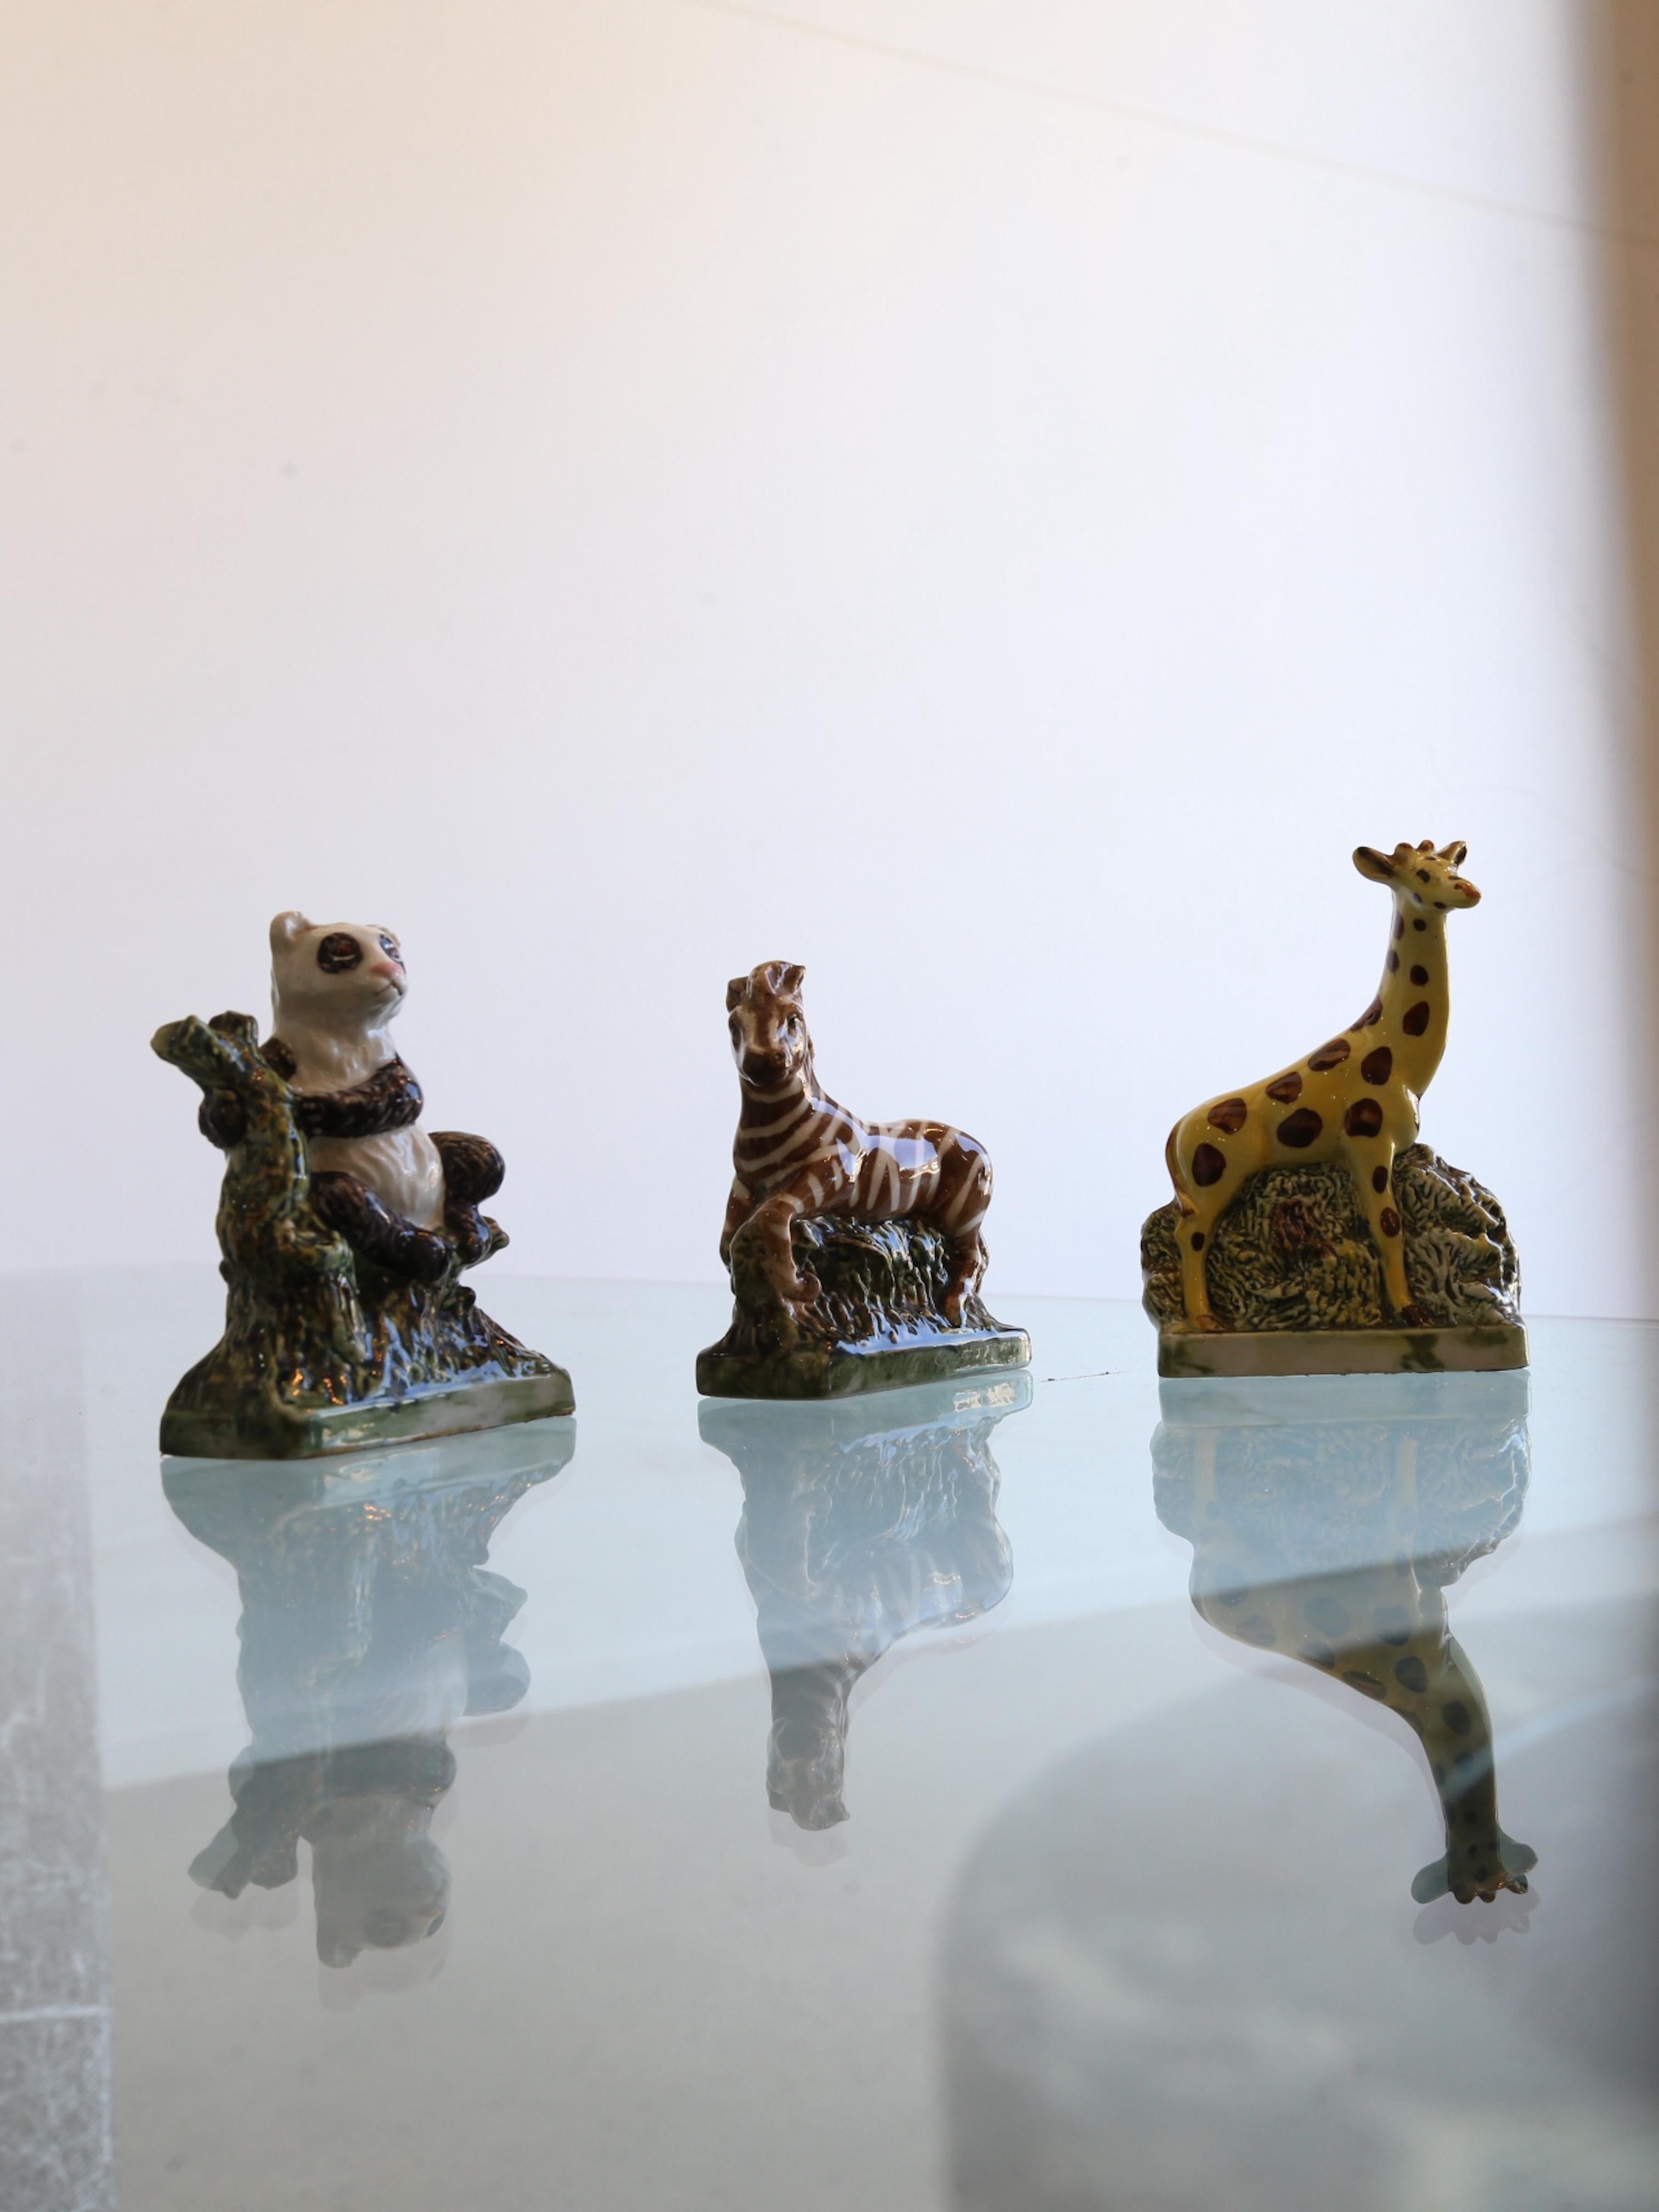 Einzigartiges und sehr sammelwürdiges Set von Tierskulpturen.
Cantine Duca d'Asti ist ein italienischer Keramikhersteller, der eine Reihe von Keramiken herstellt, darunter auch Tierskulpturen, die in Galerien und Fachgeschäften auf der ganzen Welt